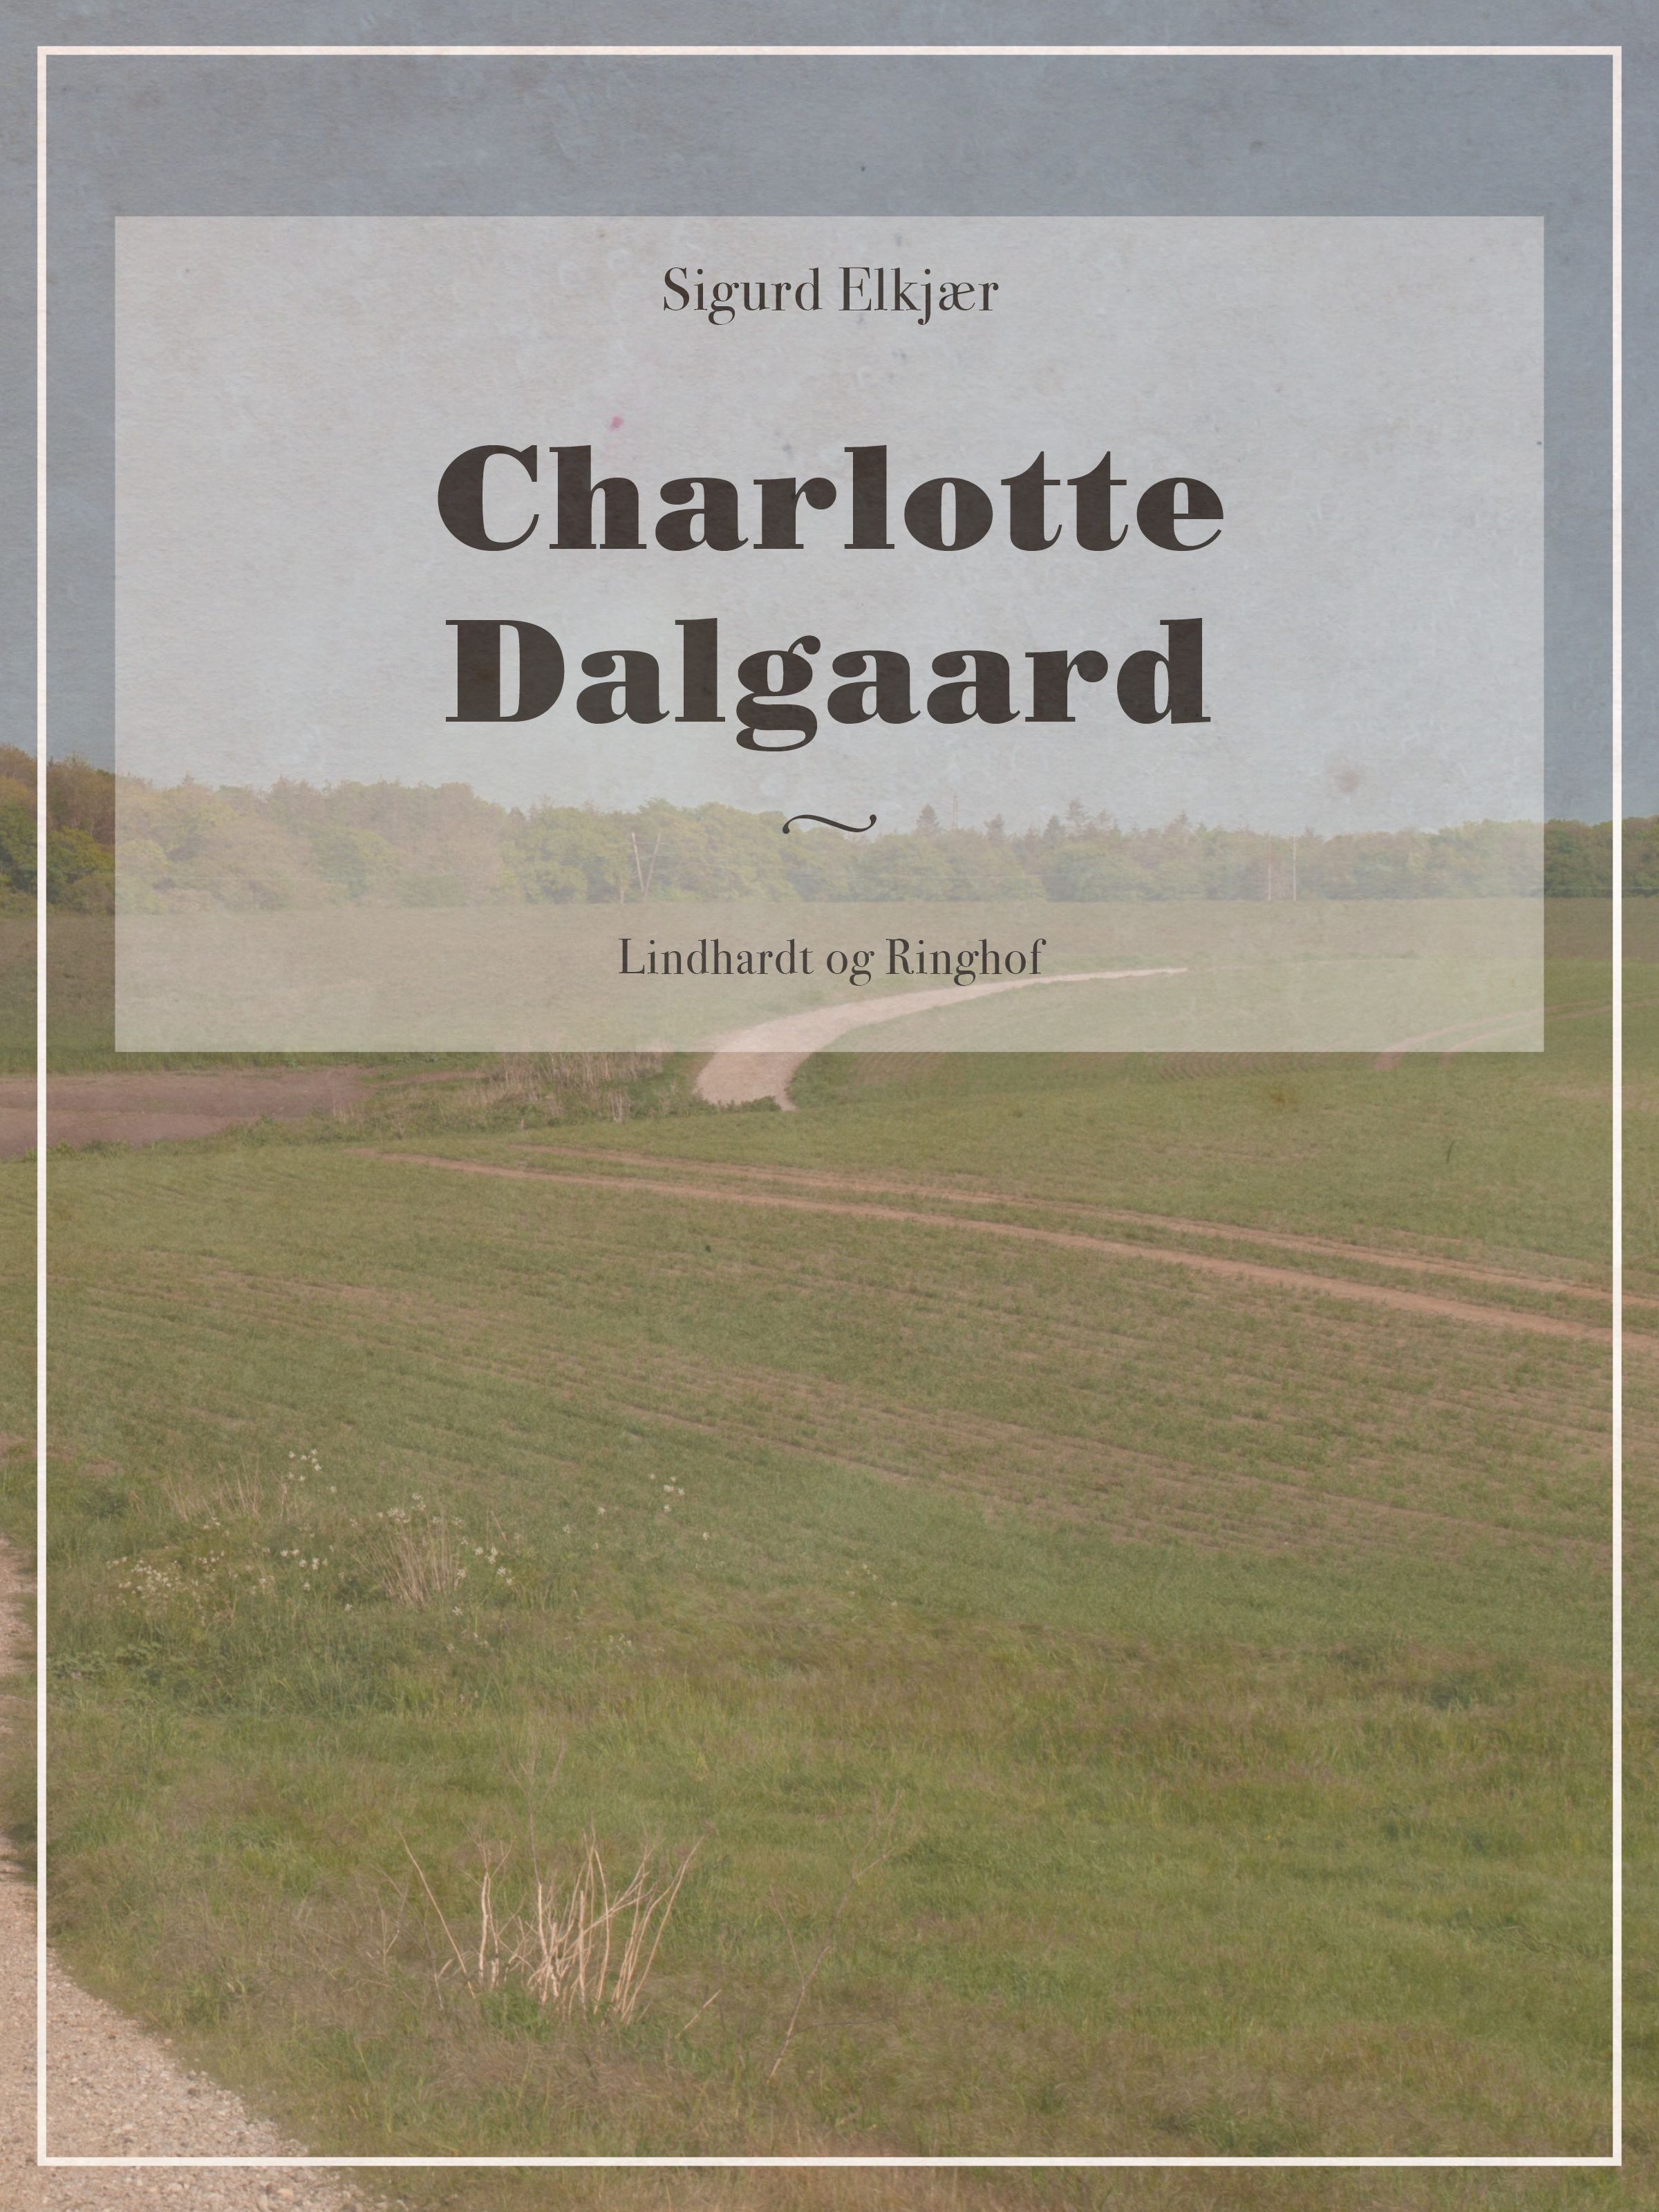 Charlotte Dalgaard, eBook by Sigurd Elkjær